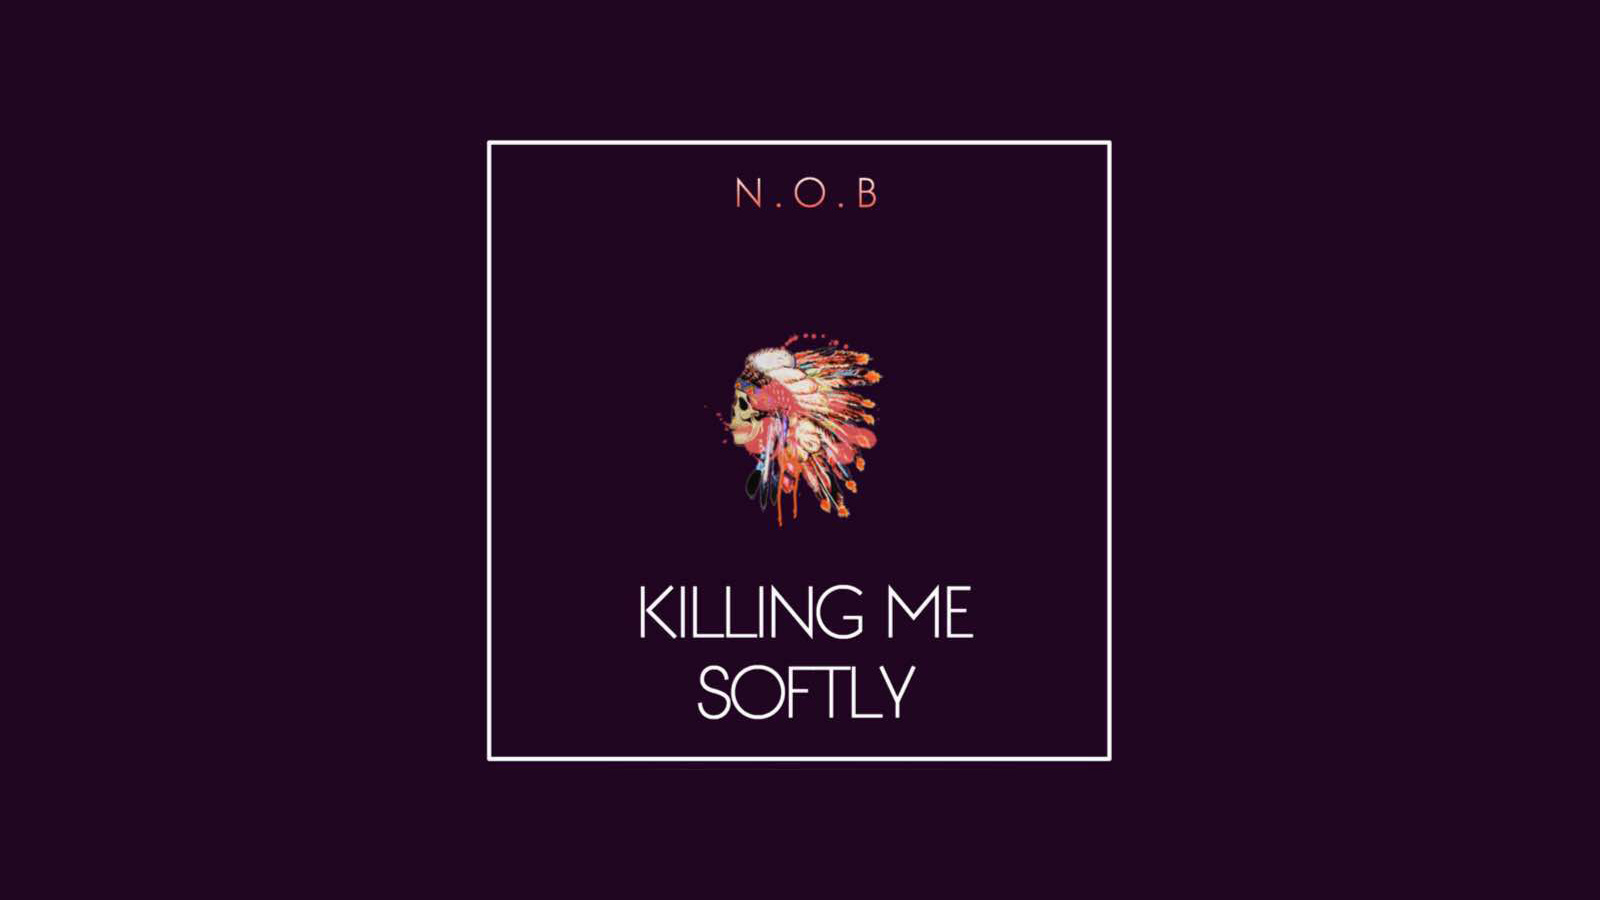 N.O.B - Killing Me Softly